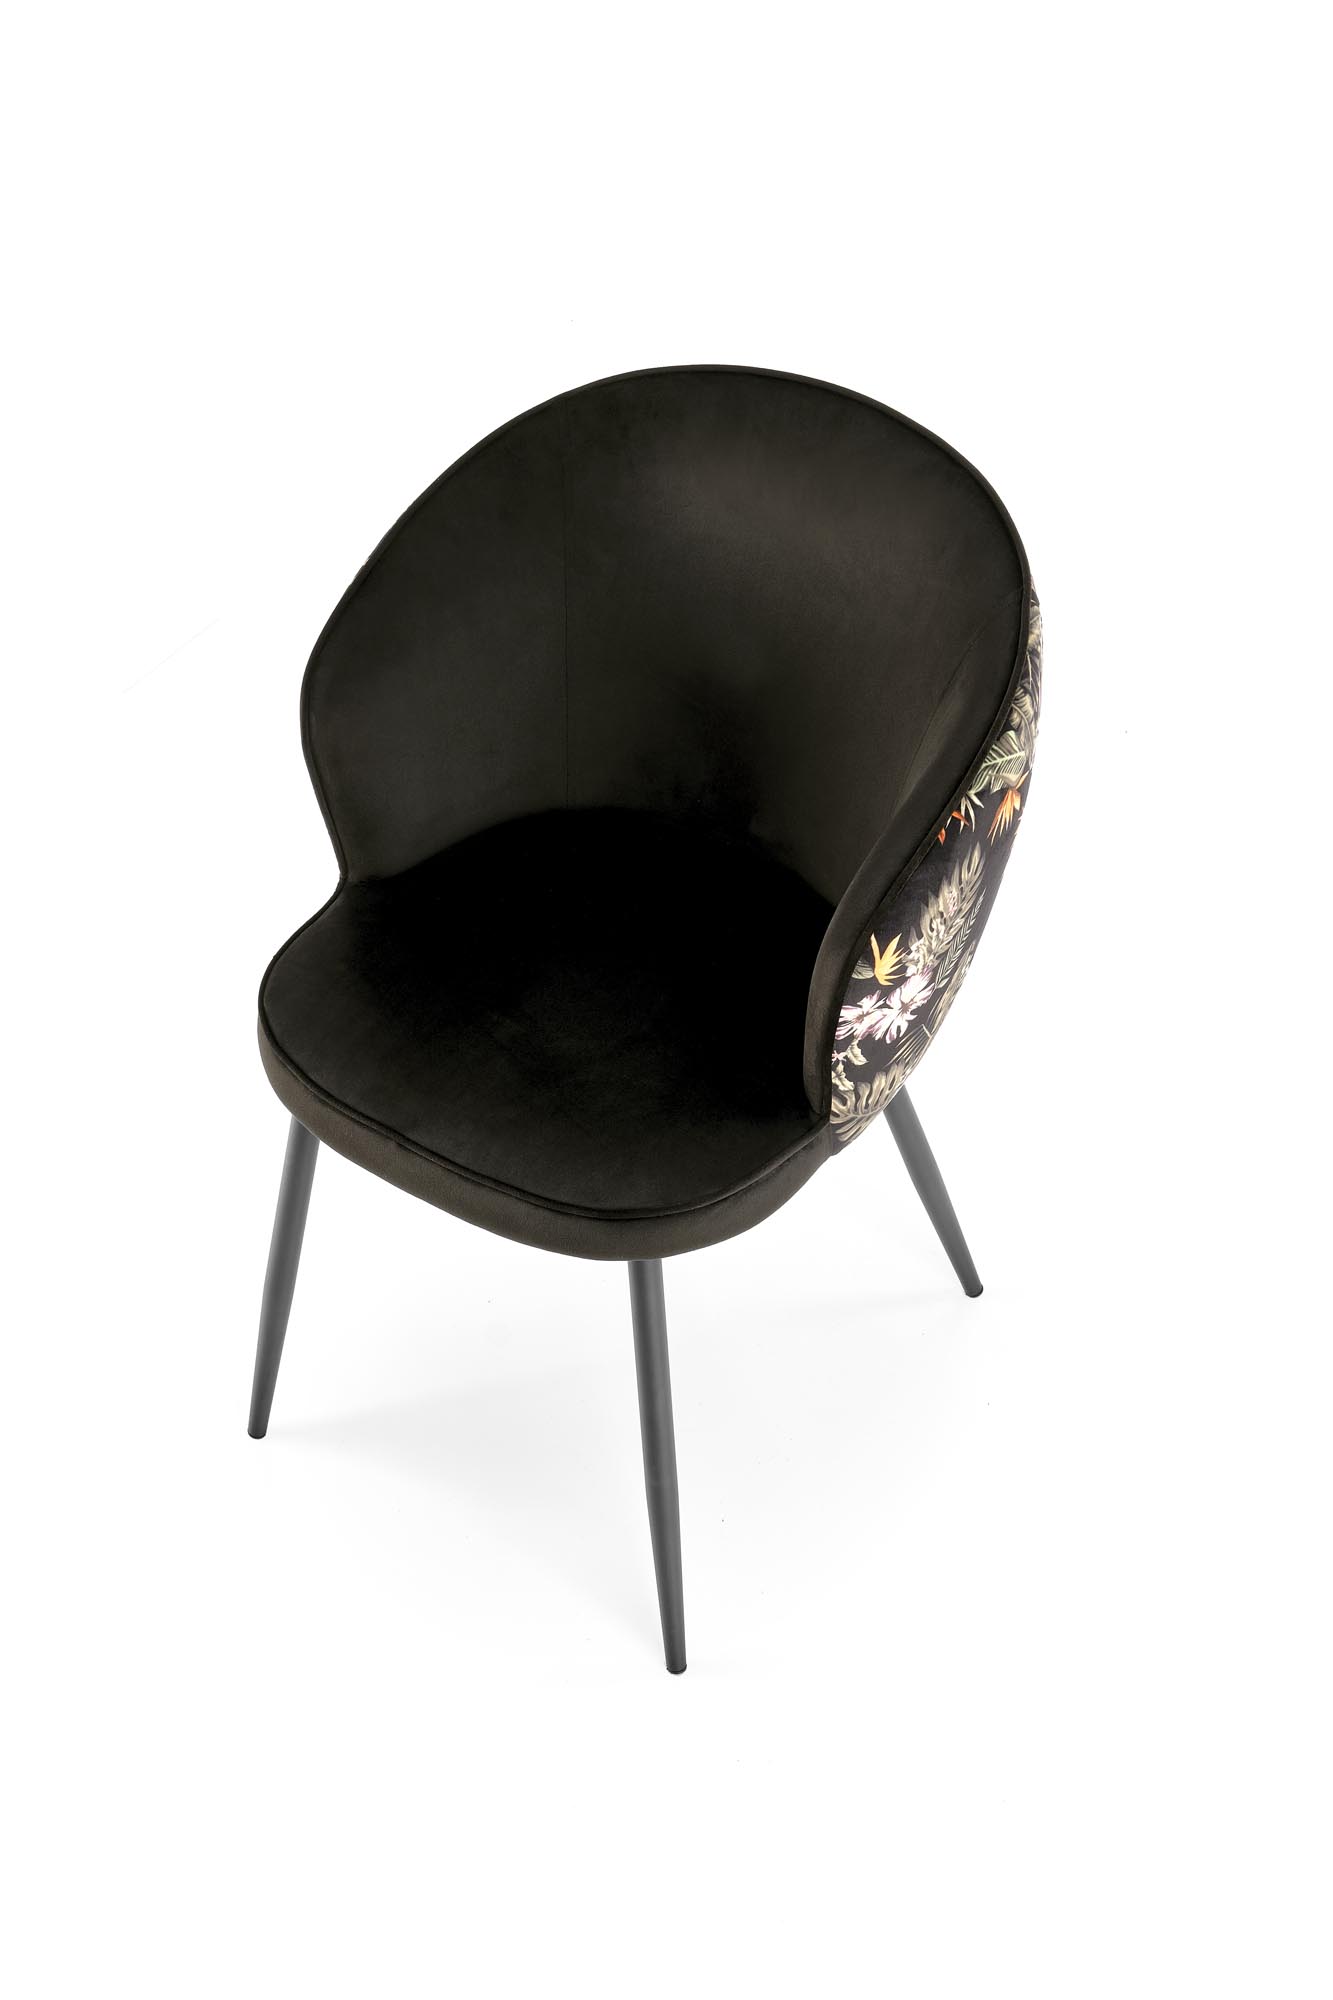 Scaun tapițat K506 - multicolor Židle čalouněné k506 - Černý